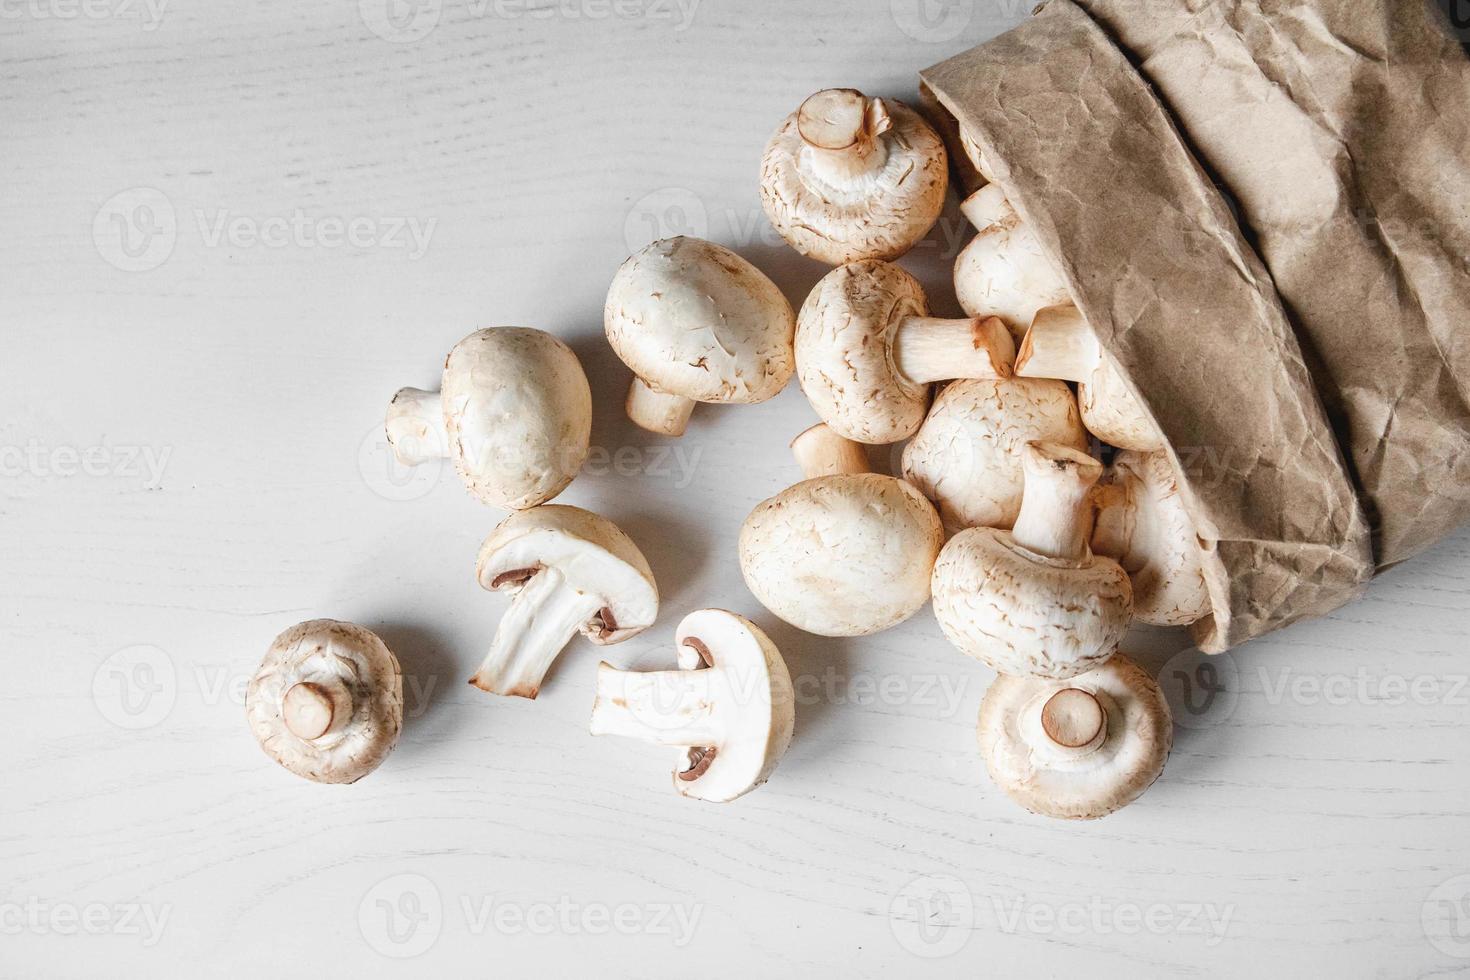 funghi champignon in sacchetto di carta su un tavolo di legno bianco foto